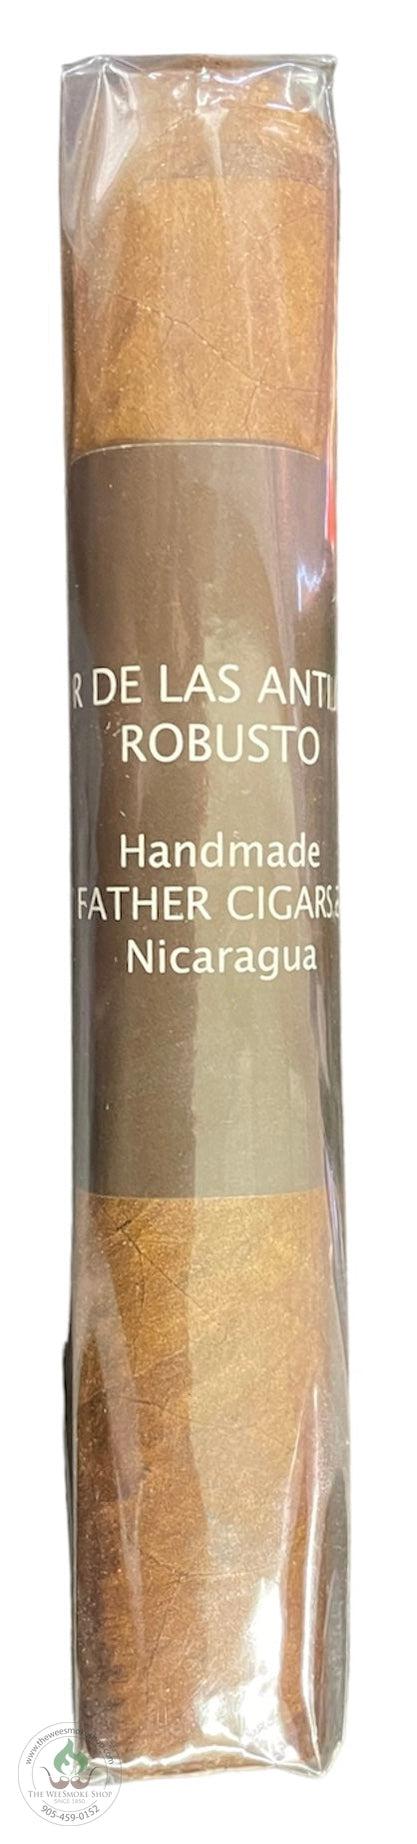 My Father - Flor de las Antillas Robusto - The Wee Smoke Shop